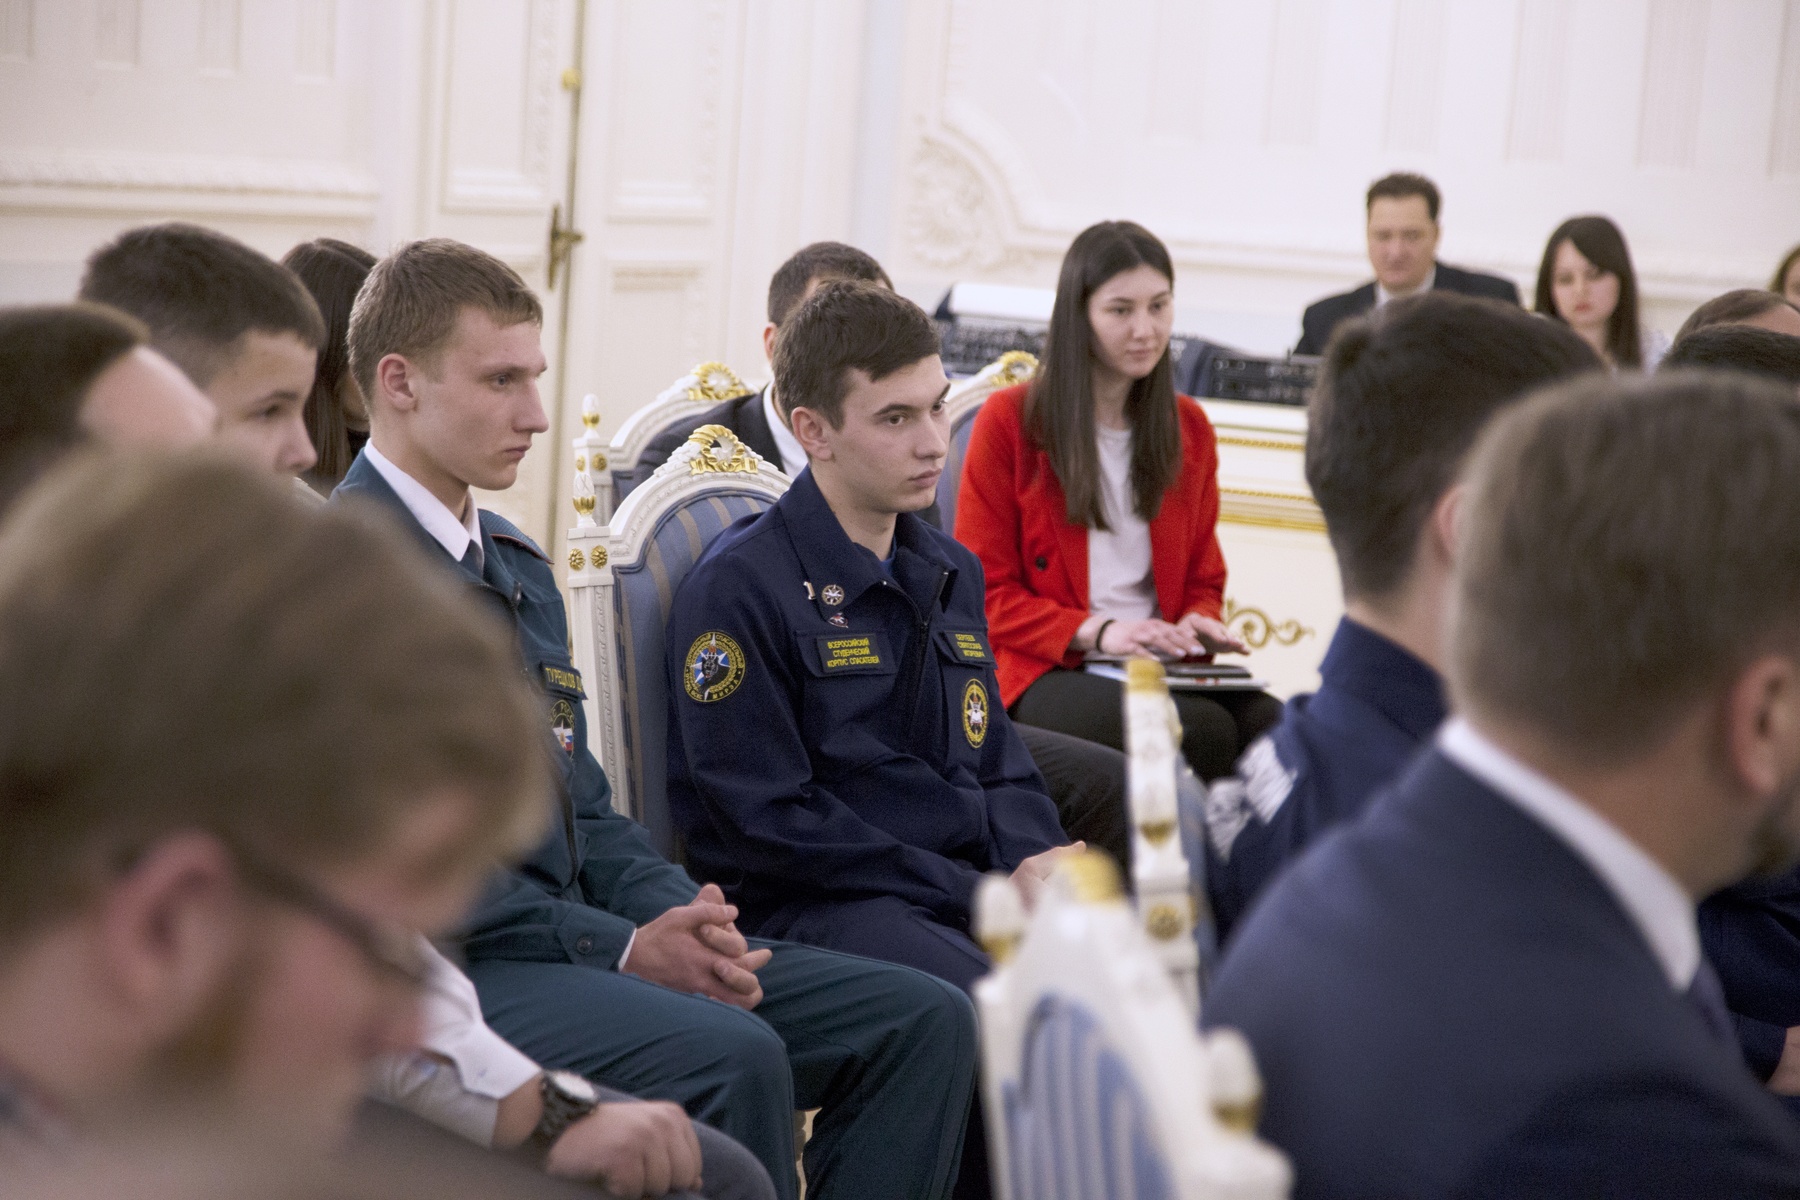    Дмитрий Медведев встретился с детьми-героями, волонтерами-спасателями, активистами МГЕР и представителями «Боевого братства»